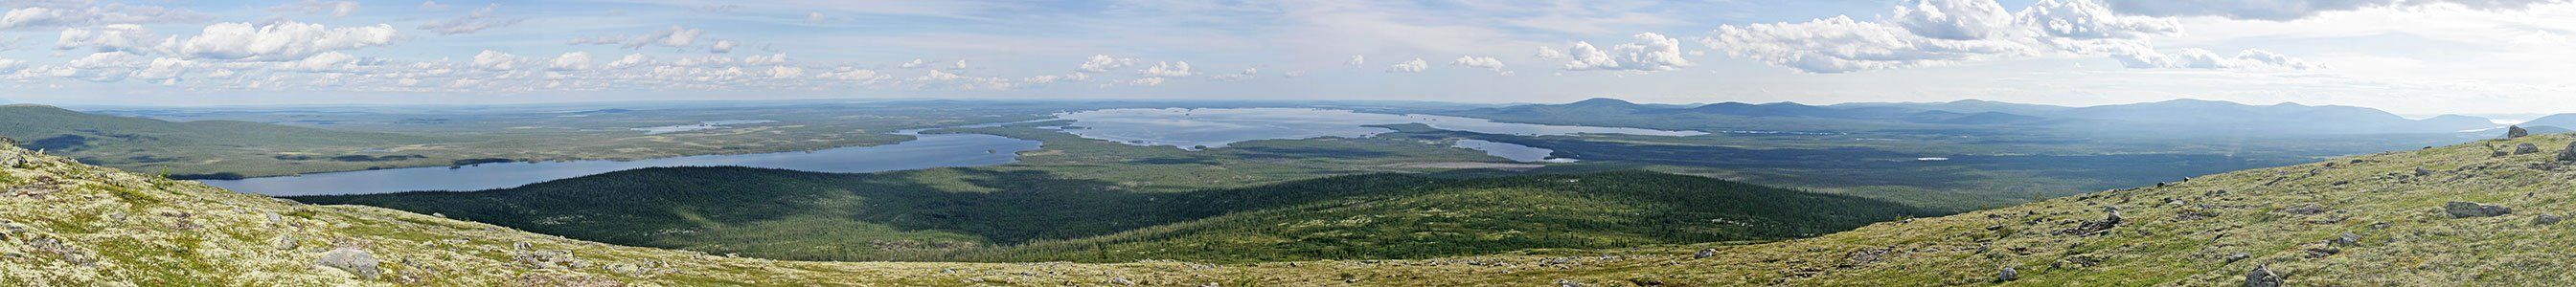 кольский, колвицкое, озеро, рисовская, иолга, панорама, Gorshkov Igor_Feanorus